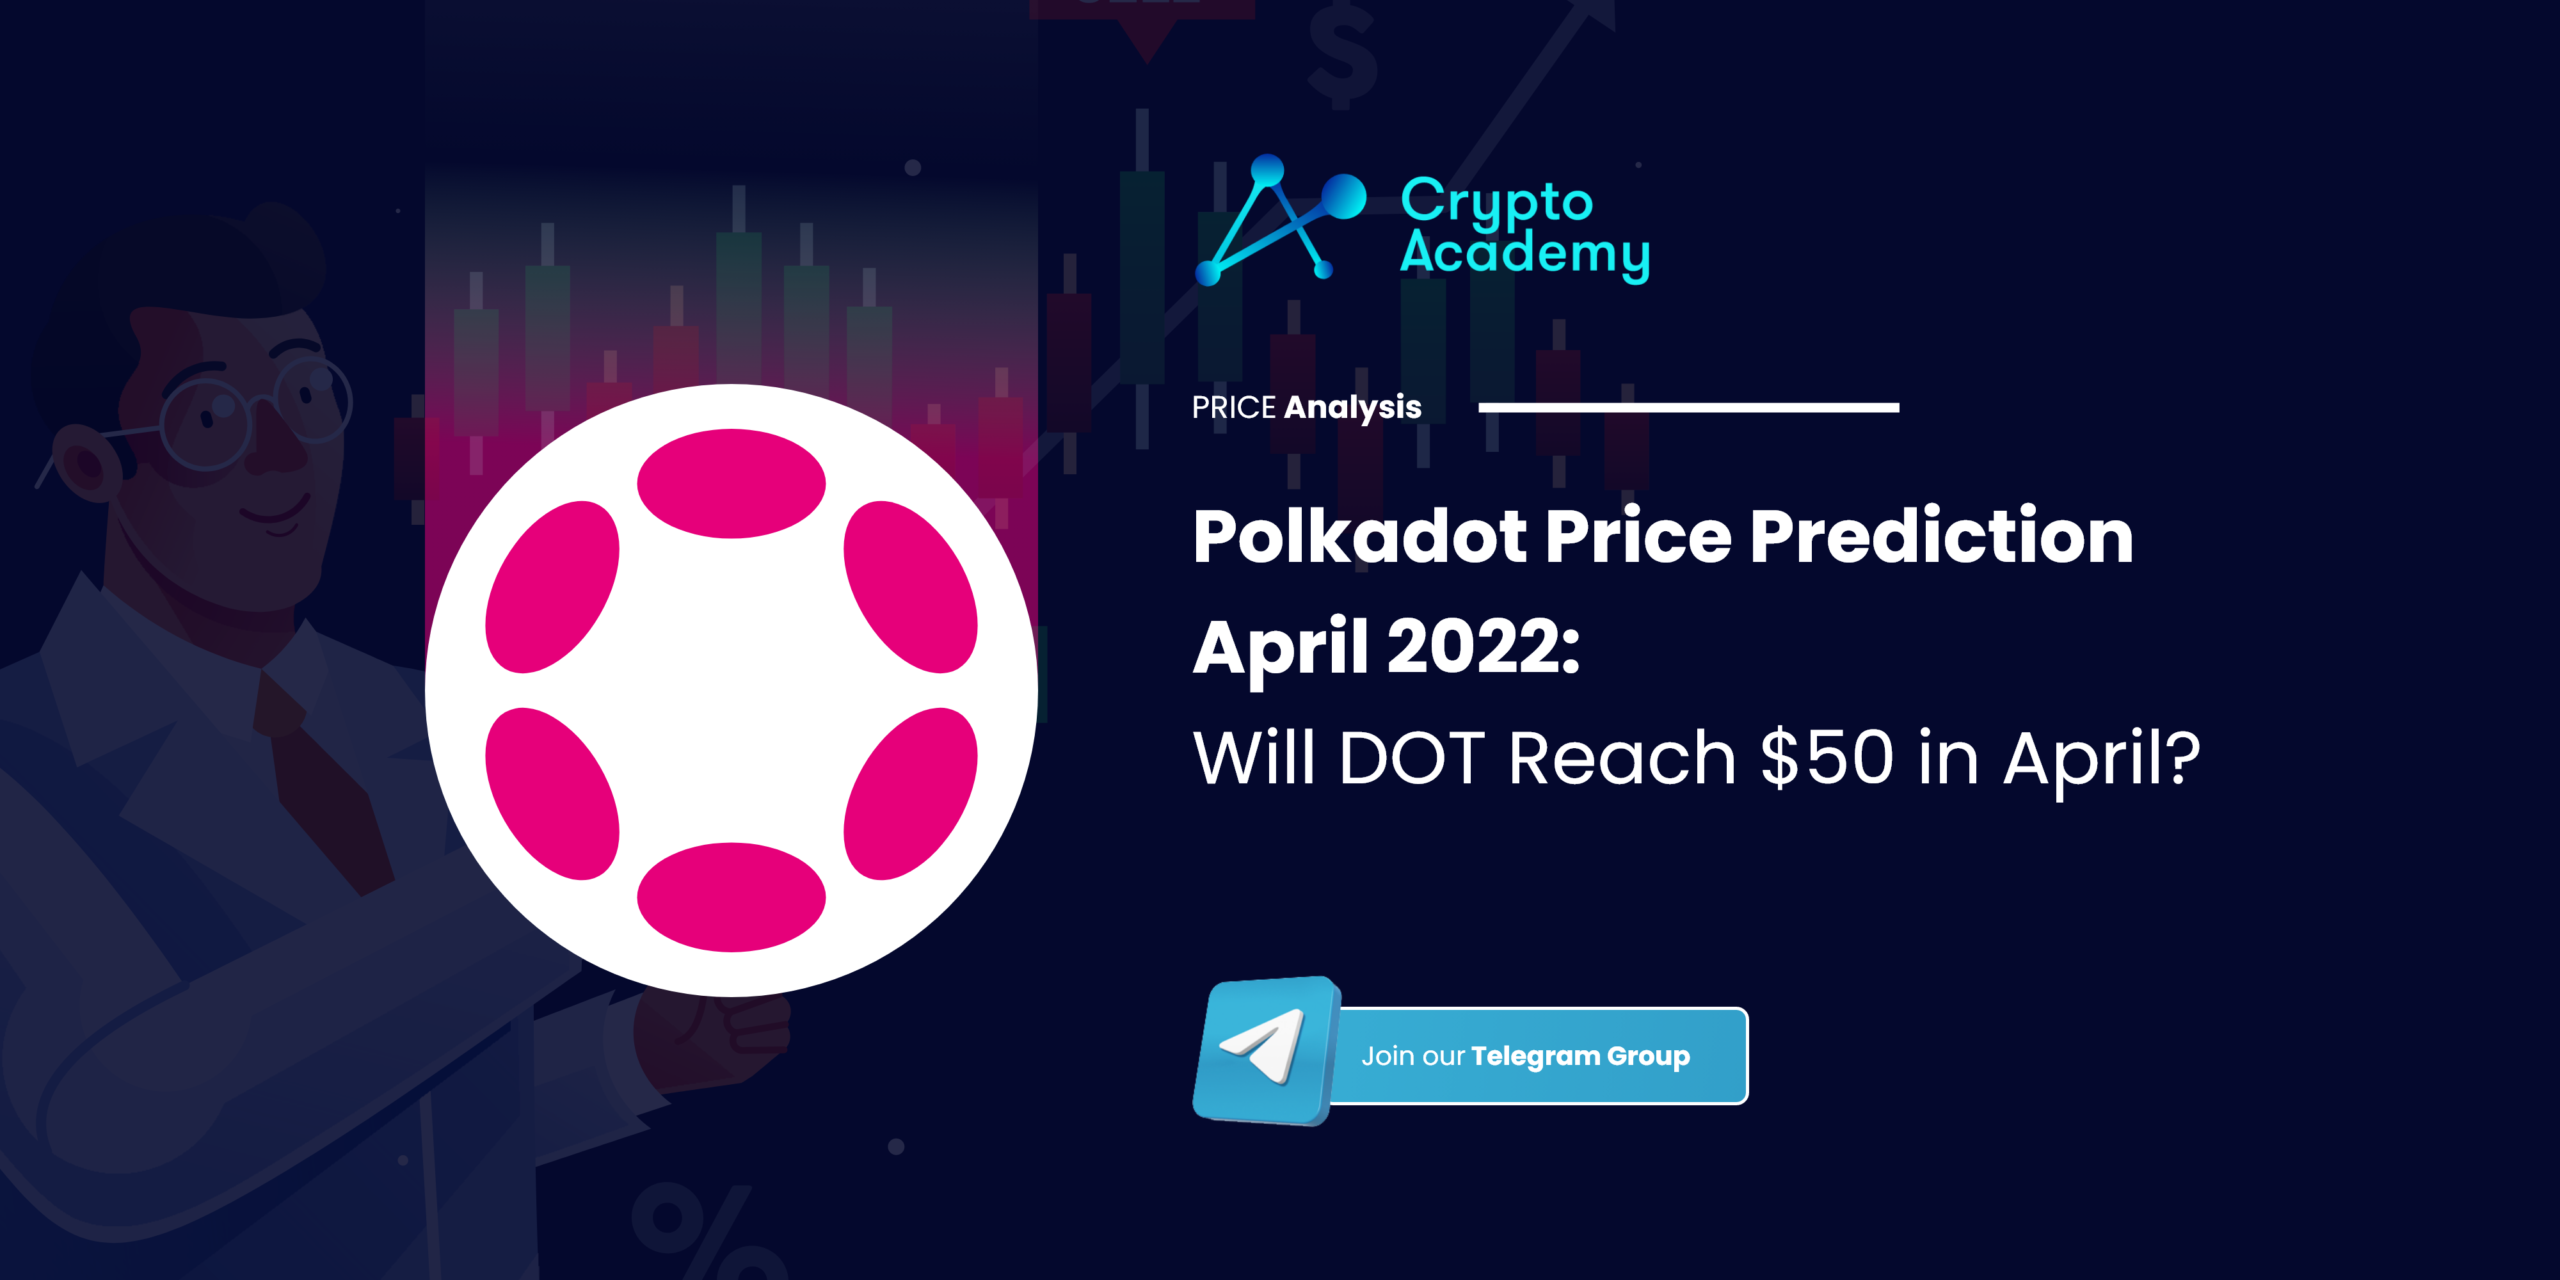 Polkadot Price Prediction April 2022: Will DOT Reach $50 in April?